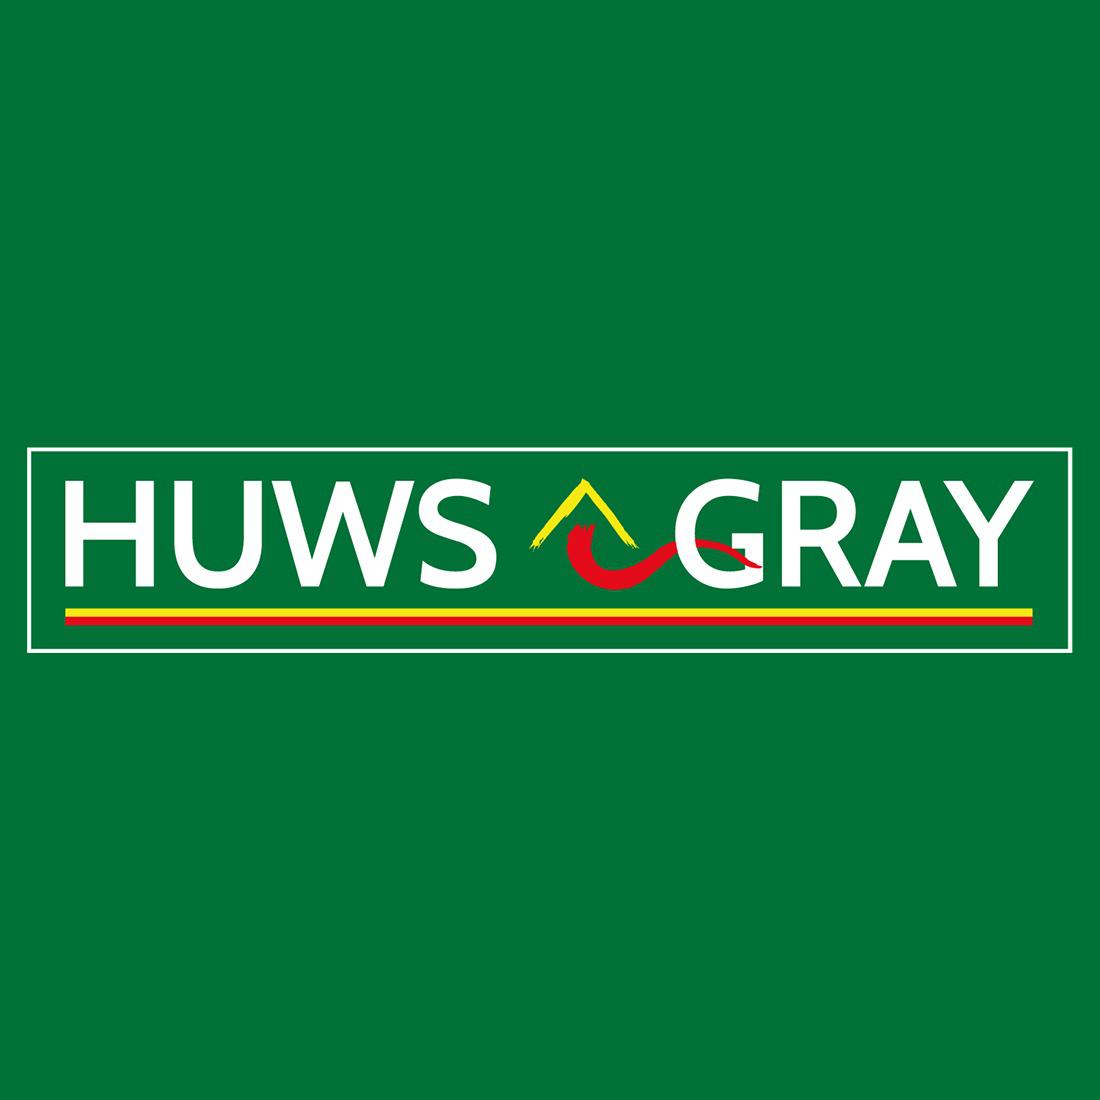 Huws Gray Square Logo Huws Gray Malmesbury Malmesbury 01666 823518